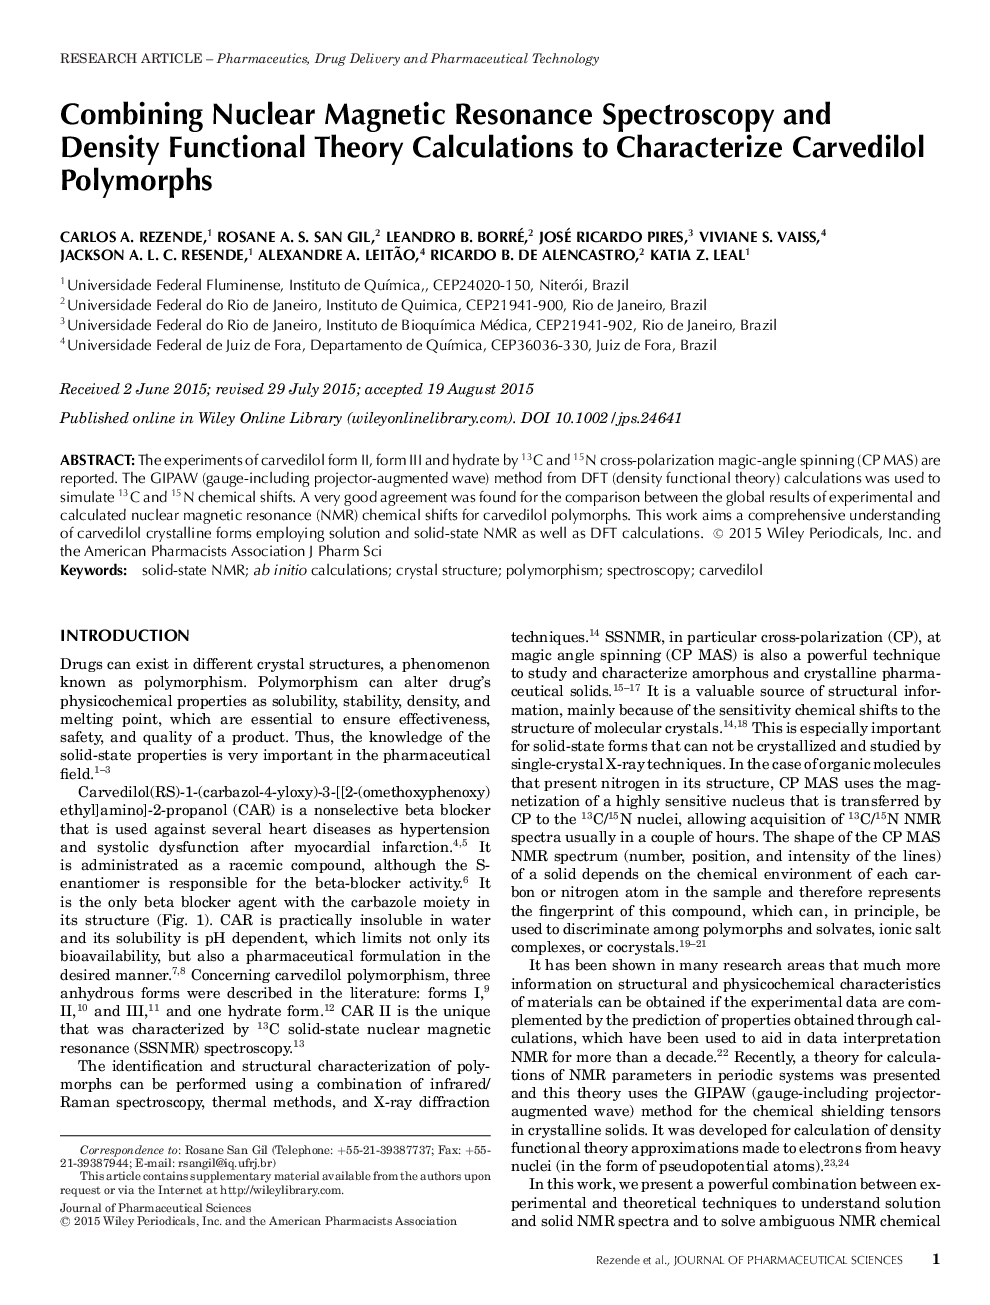 ترکیبی از طیف سنجی رزونانس مغناطیسی هسته ای و محاسبات تئوری عملکردی برای مشخص کردن پلیمرورهای کاردویدولول 